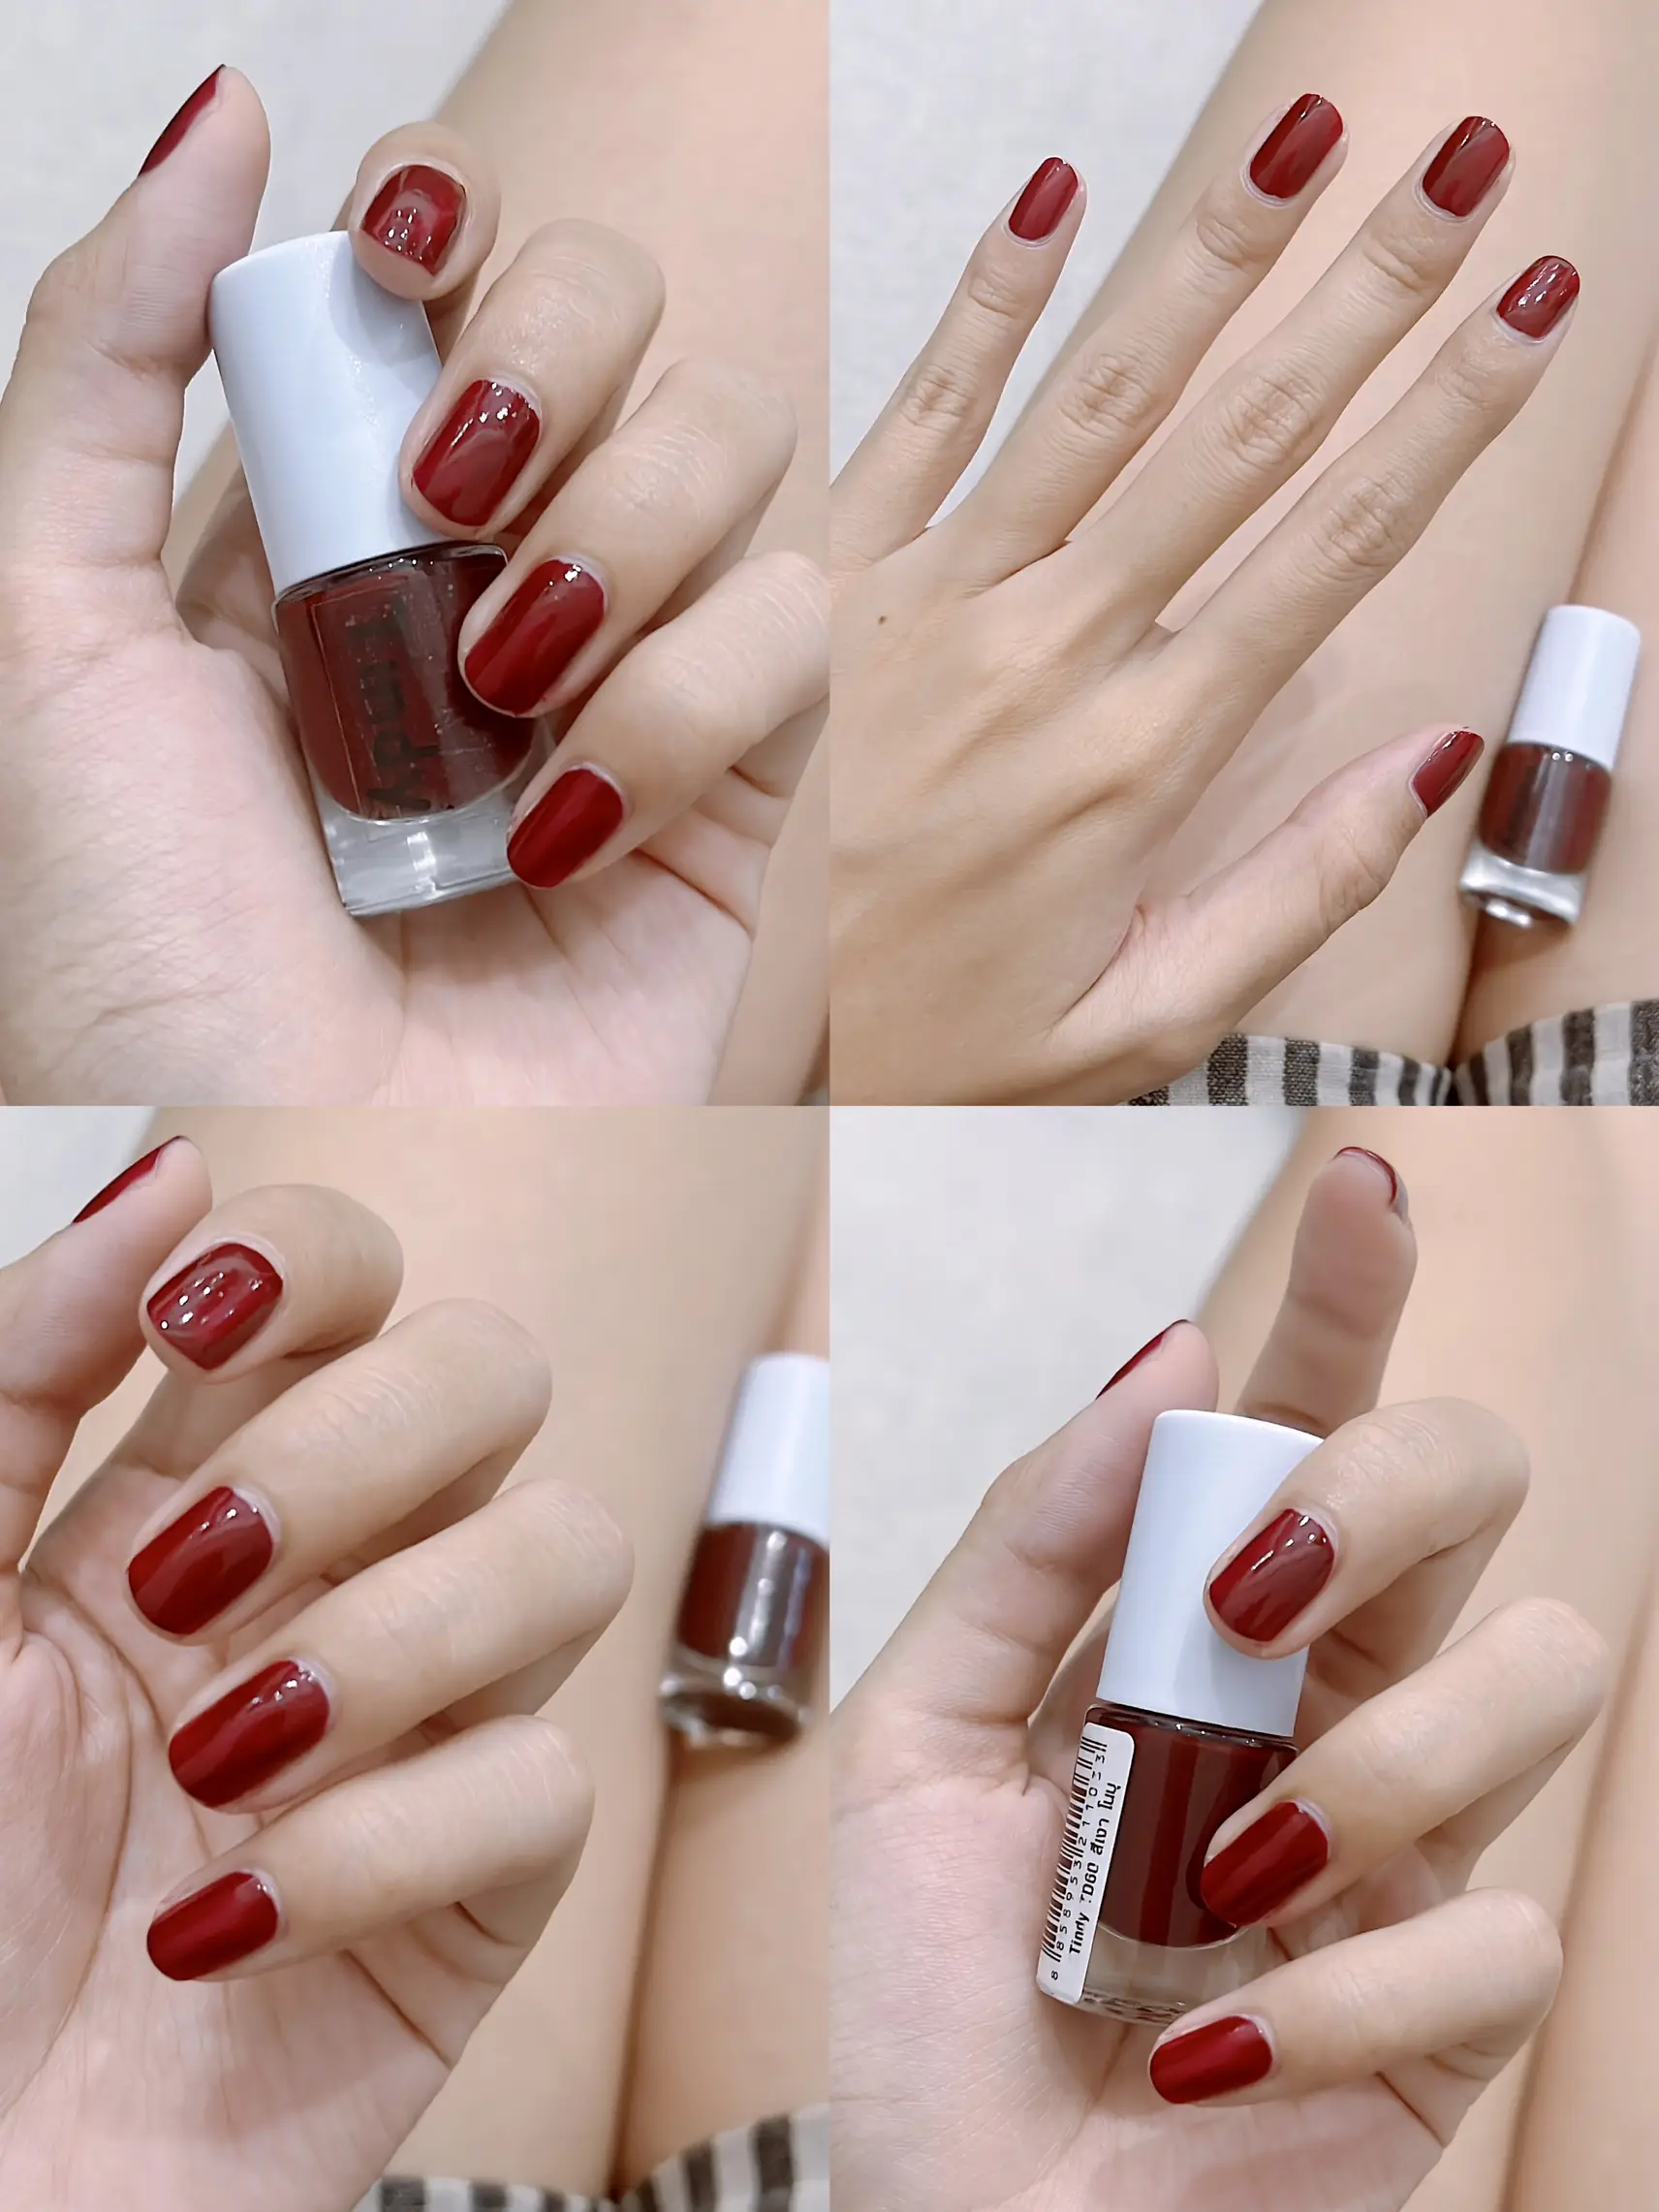 red nail polish hands